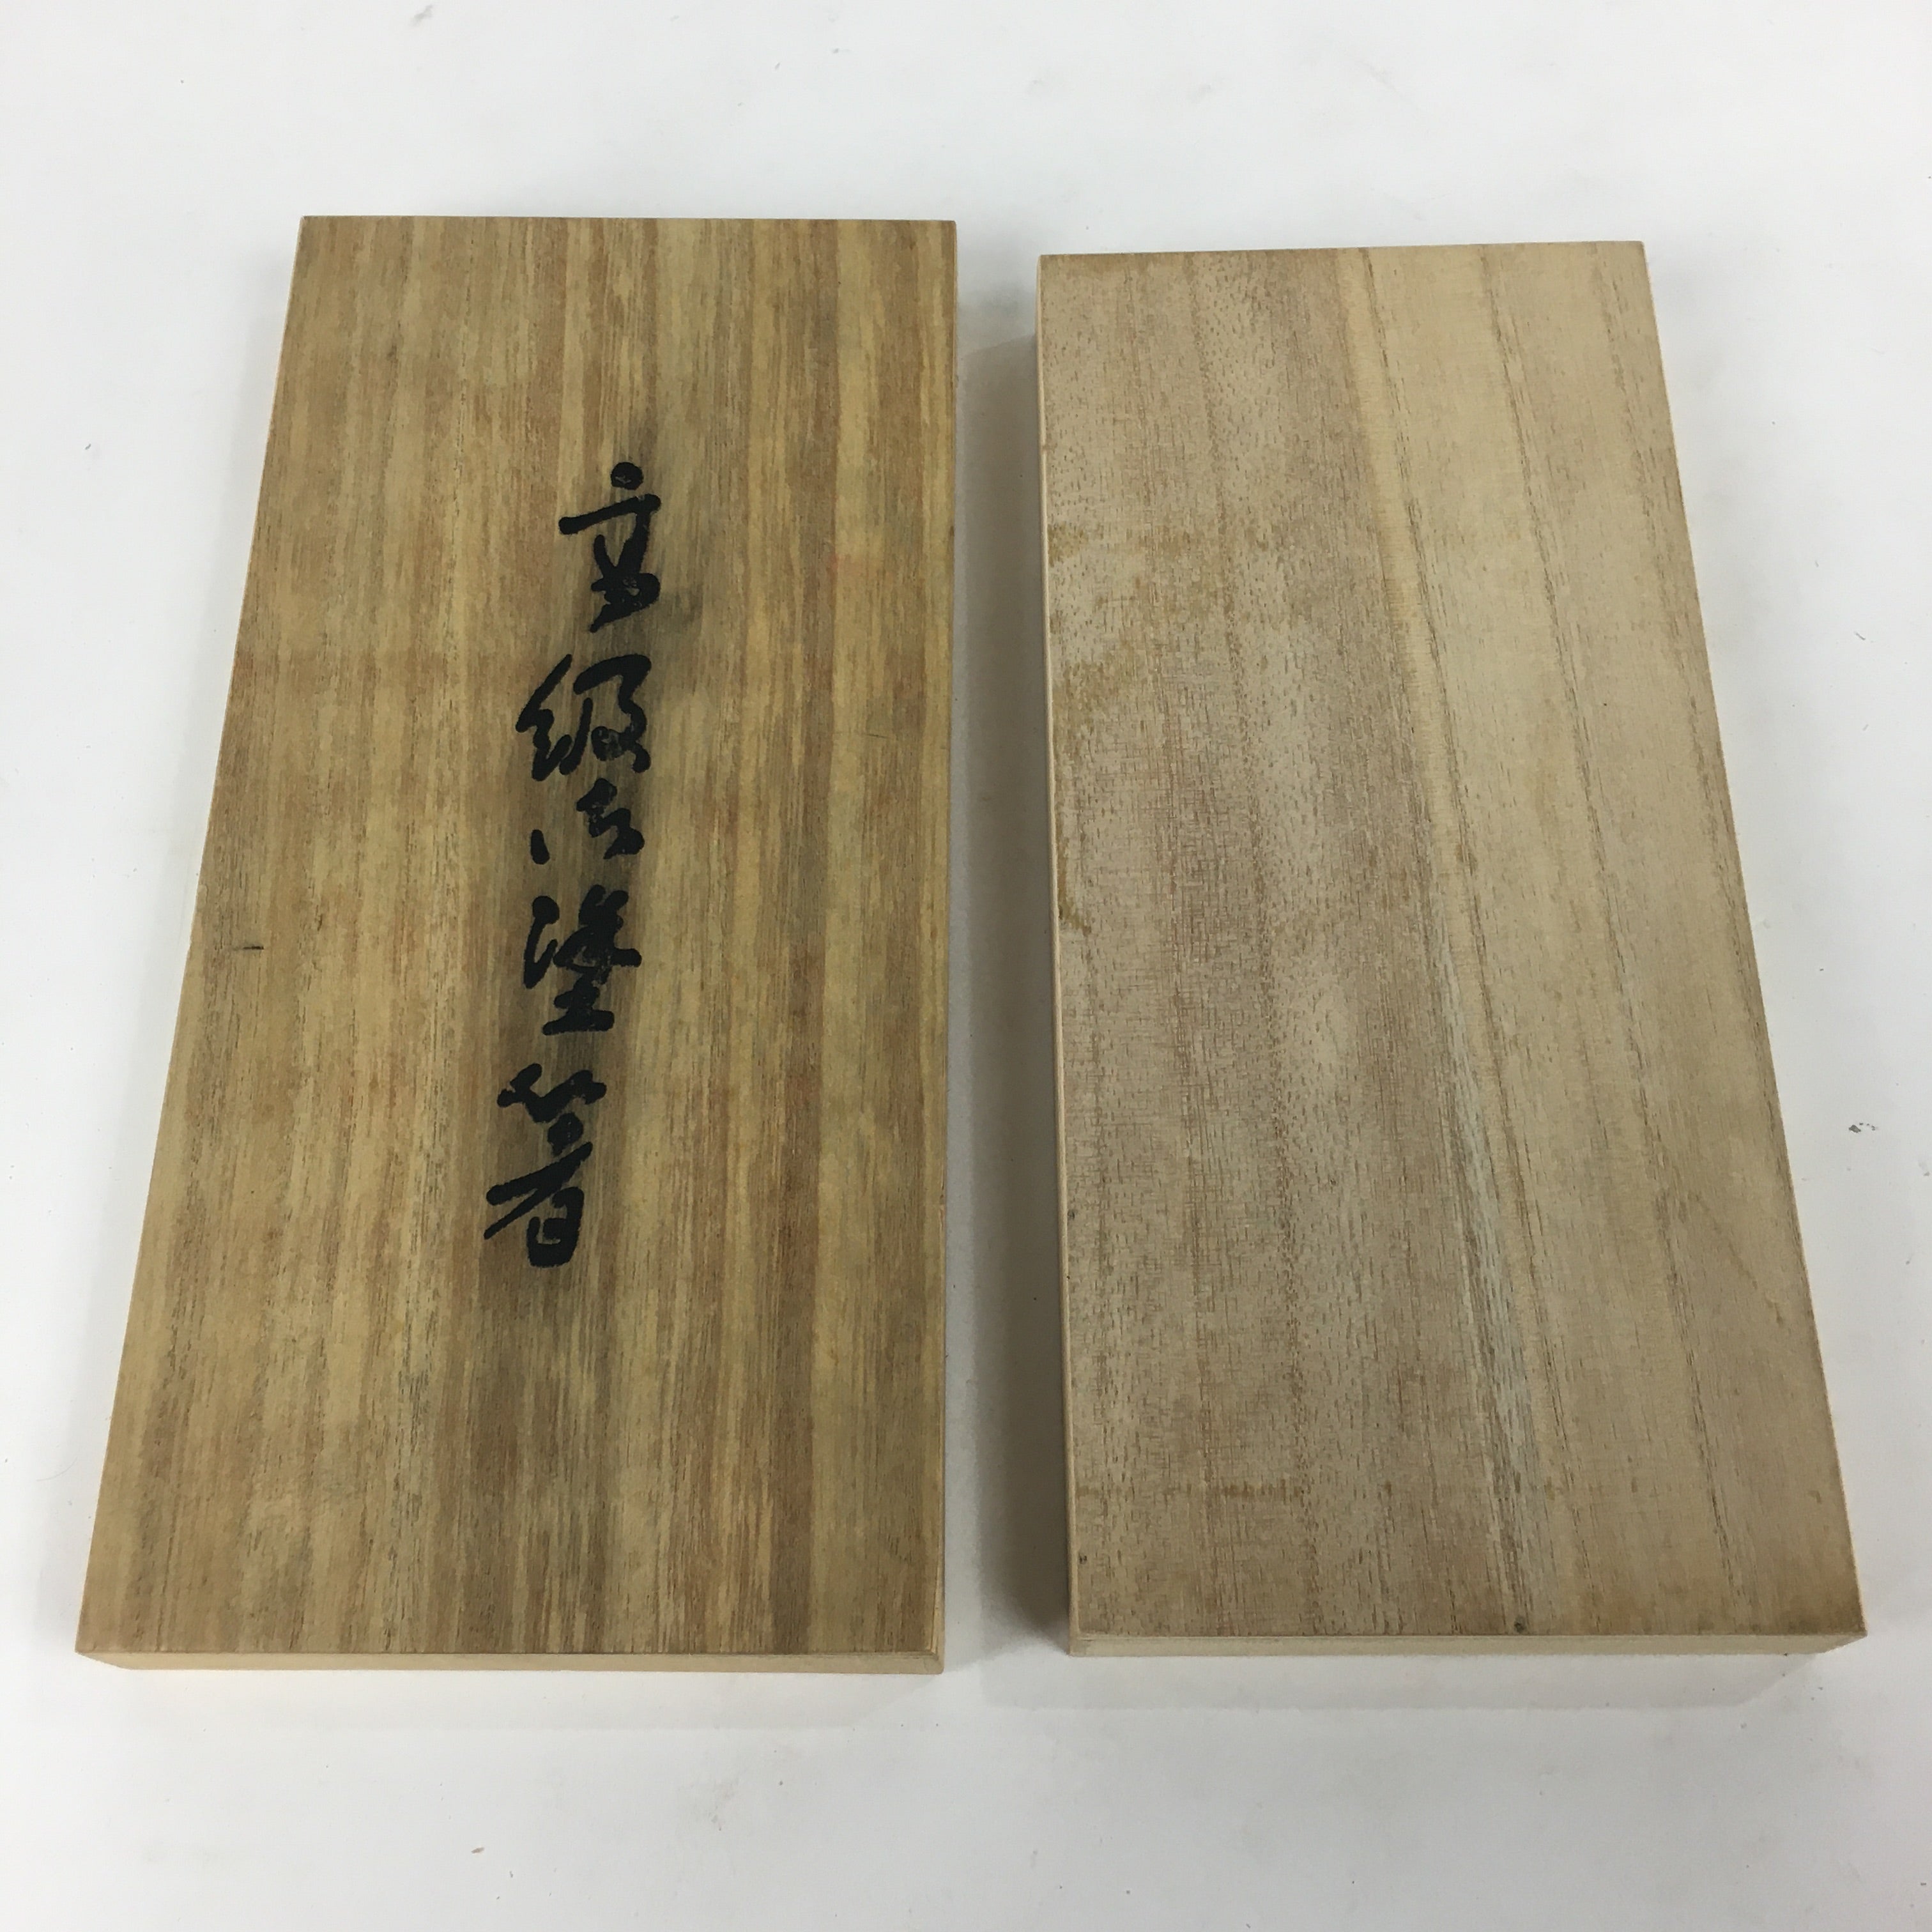 Japanese Wooden Storage Box Vtg Pottery Hako Inside 10.3x24.5x2cm WB902